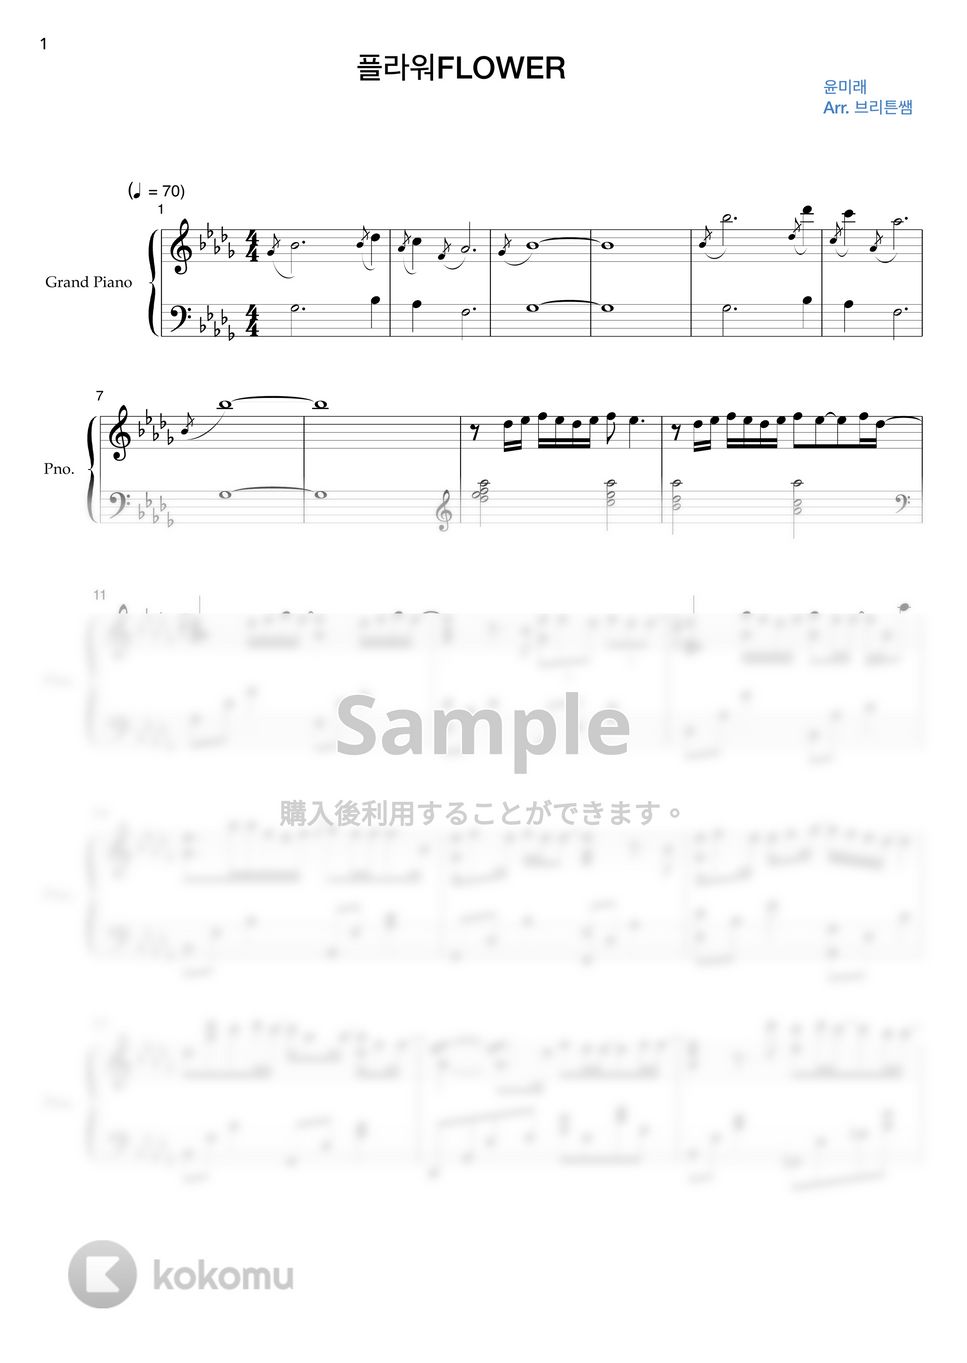 ユン・ミレ(愛の不時着 OST) - FLOWER by BRITTENSSEM